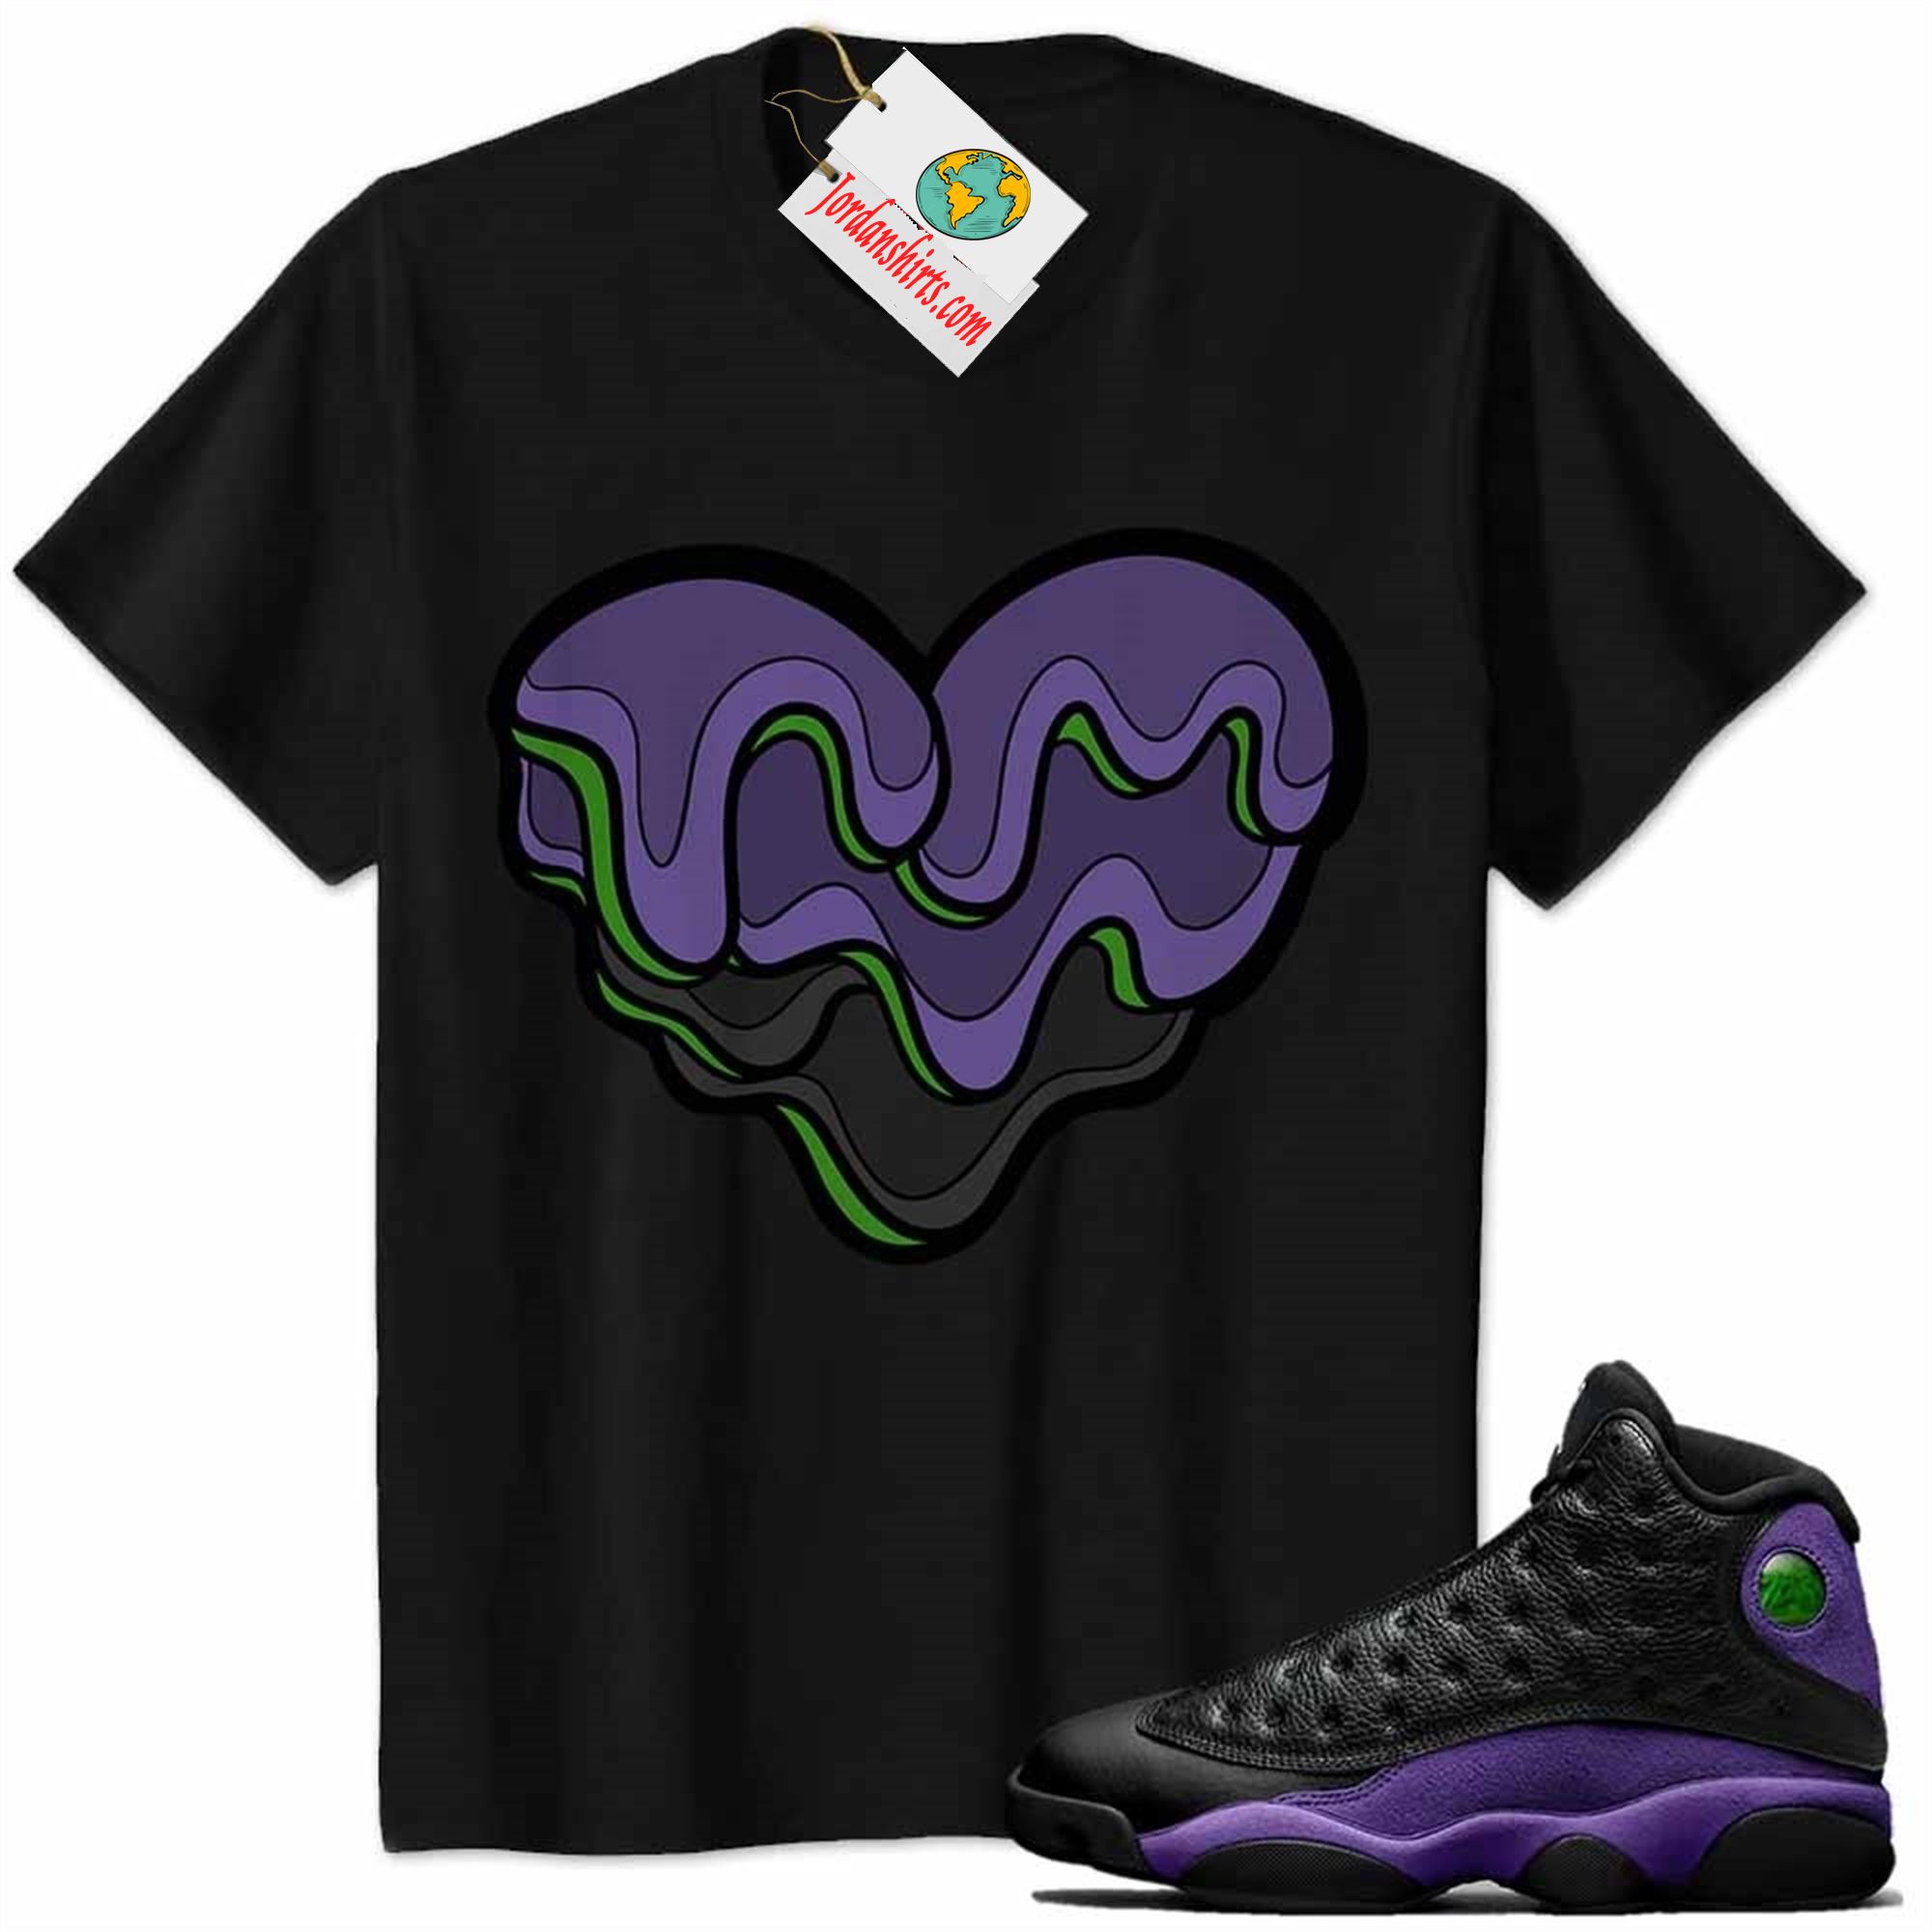 Jordan 13 Shirt, Melt Dripping Heart Black Air Jordan 13 Court Purple 13s Size Up To 5xl